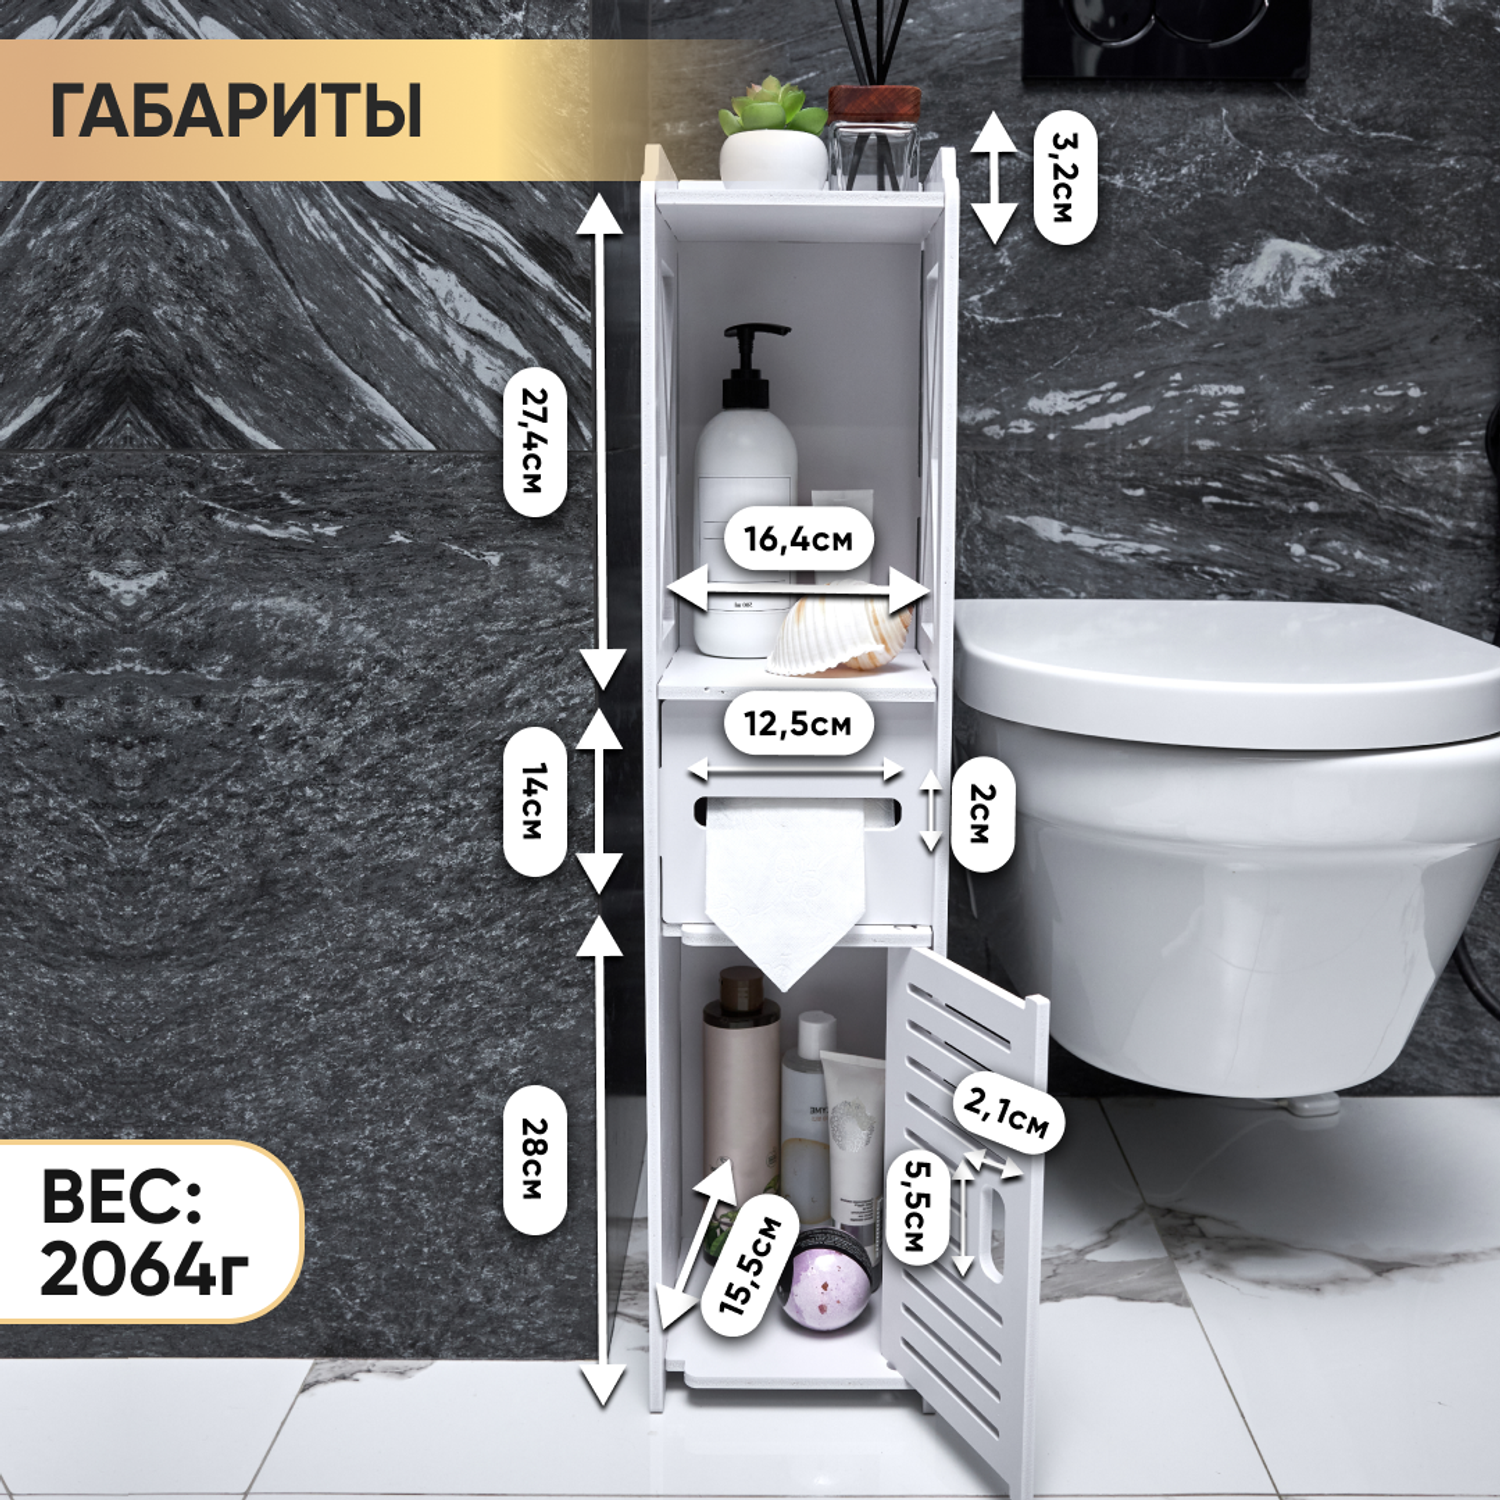 Шкаф в ванную напольный oqqi пенал-тумбочка органайзер для ванной - фото 11